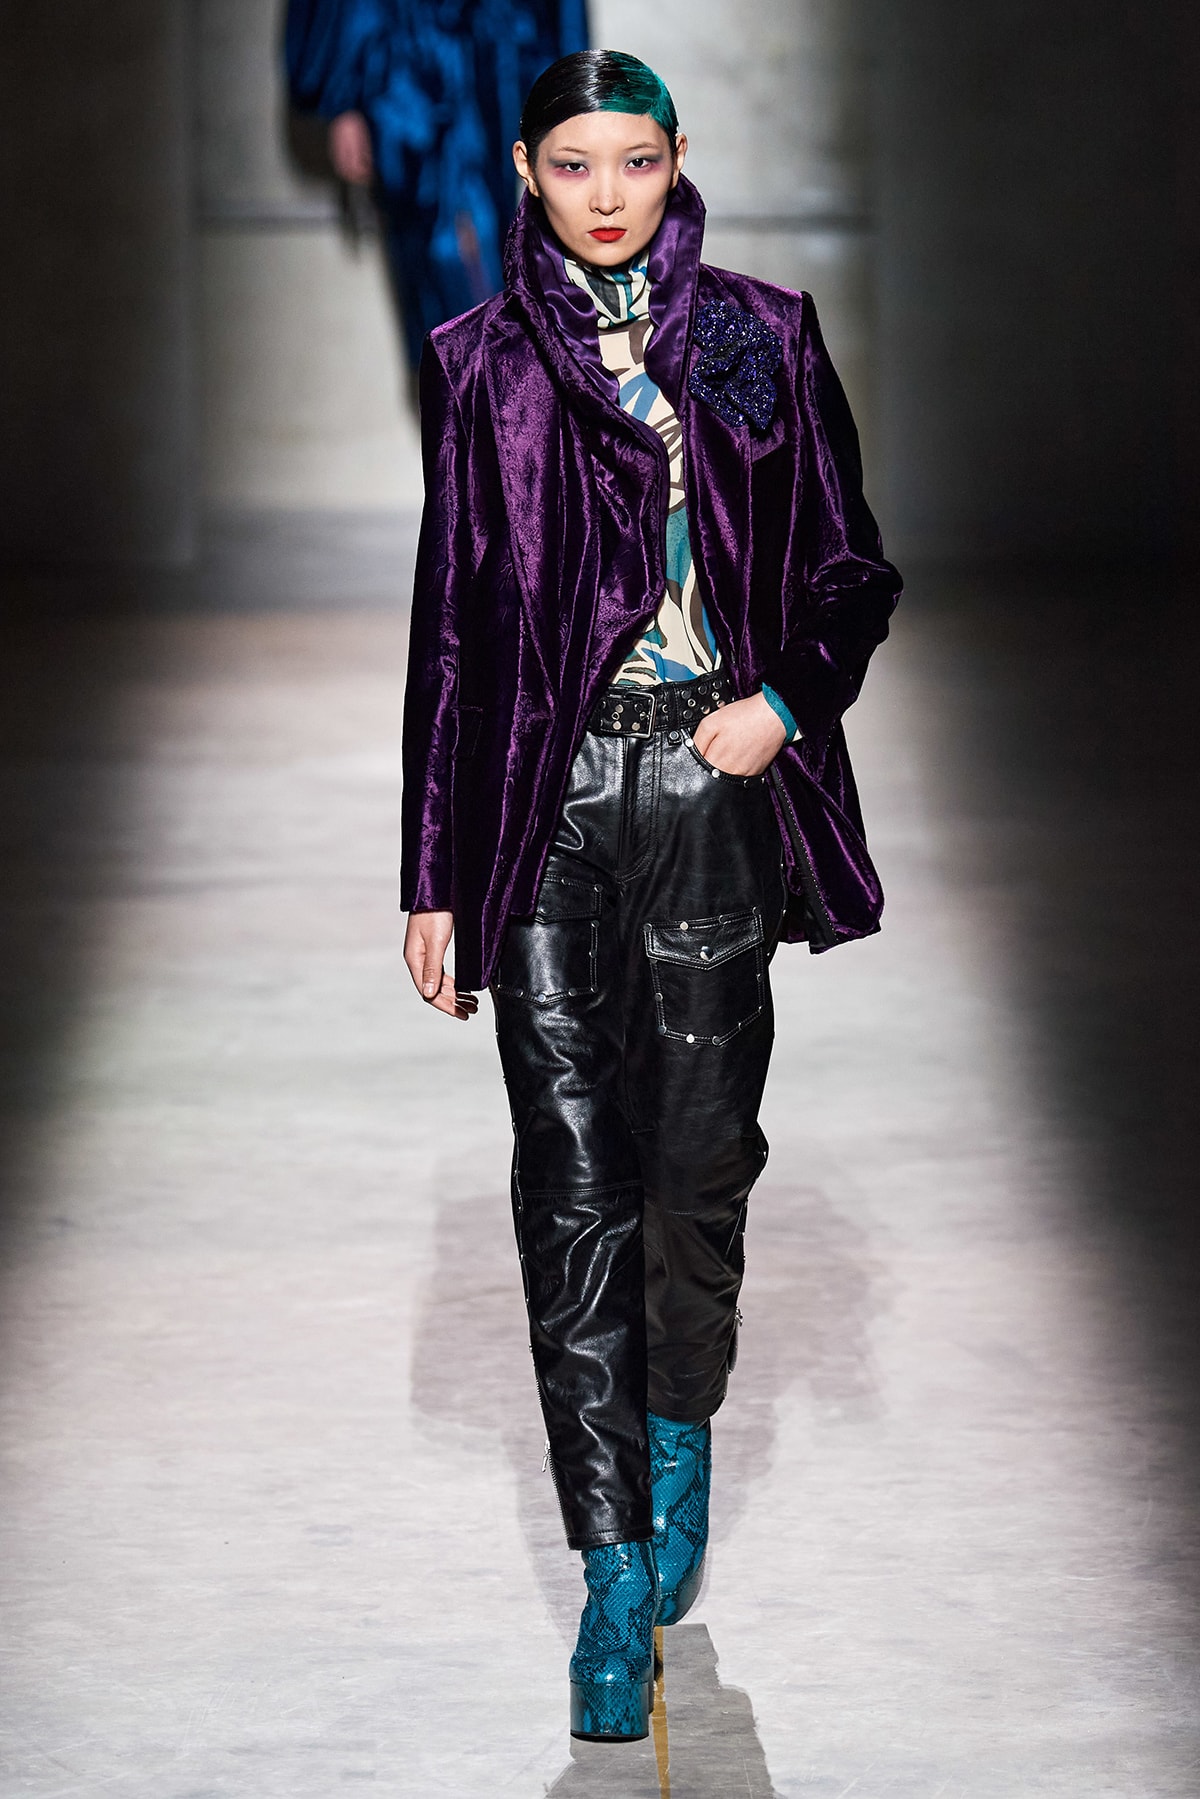 Dries Van Noten Fall/Winter 2020 Collection Runway Show Velvet Jacket Purple